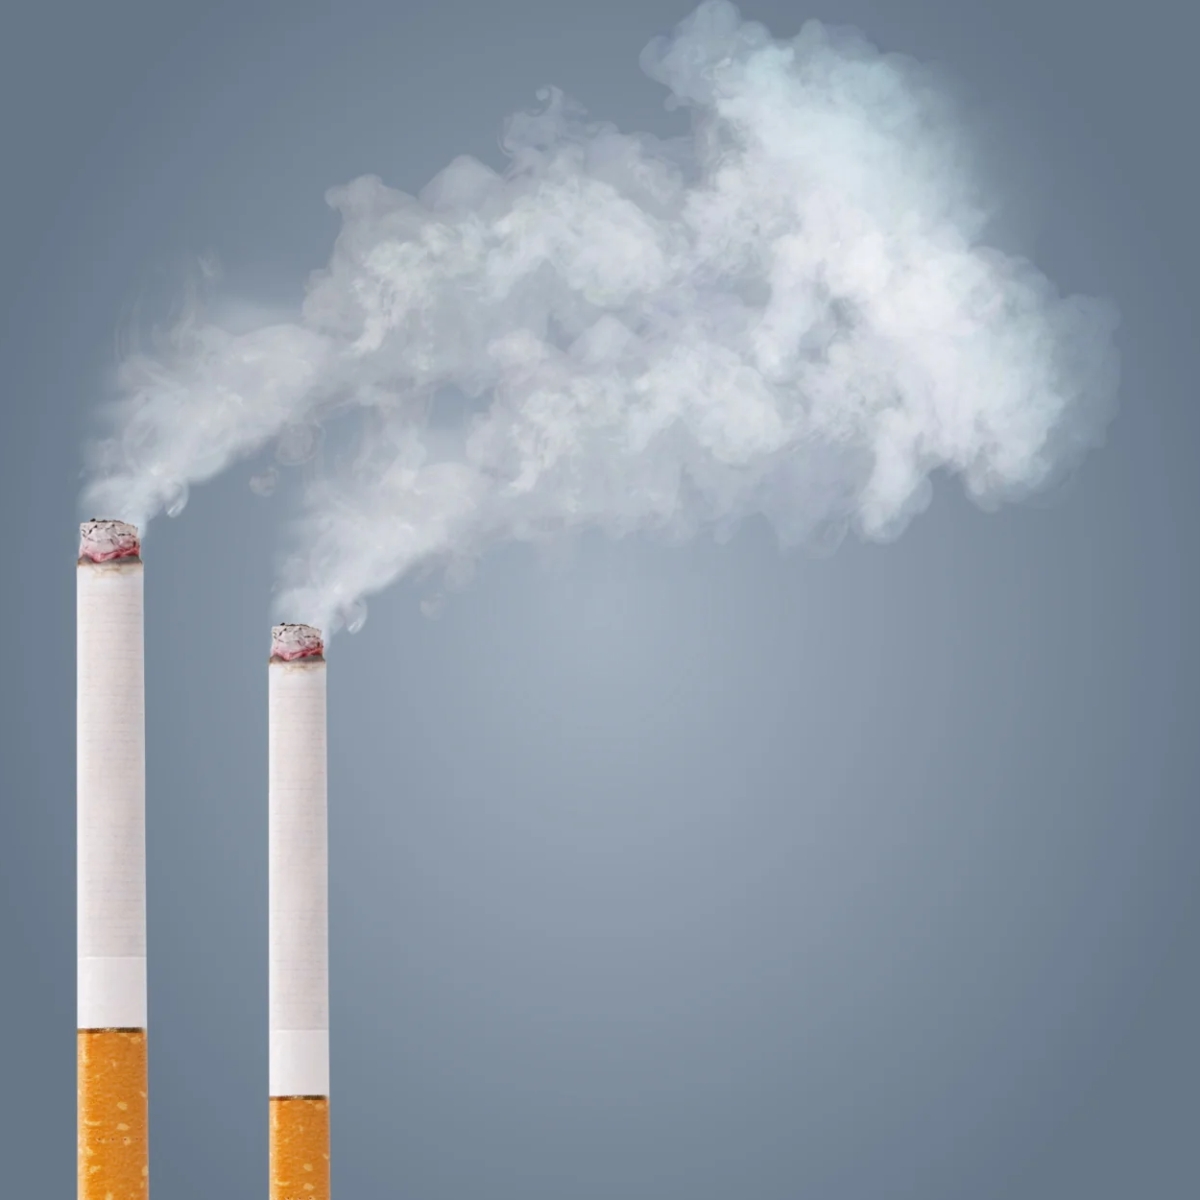 Η ατμοσφαιρική ρύπανση, πιο επικίνδυνη από το κάπνισμα και το οινόπνευμα για την δημόσια υγεία